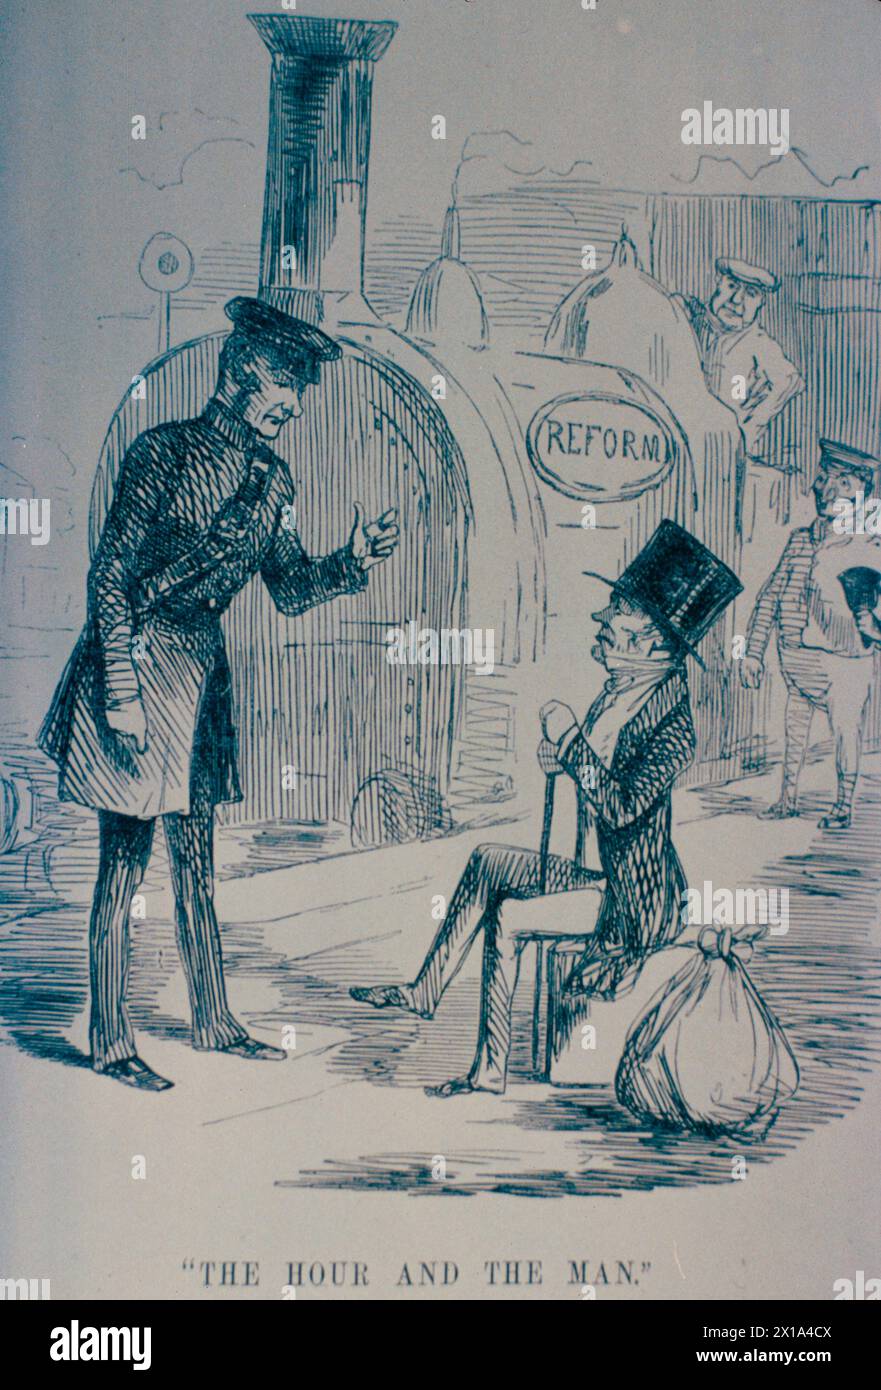 John Russell et Richard Cobden vont leurs chemins séparés, illustration de Punch, Angleterre 1846 Banque D'Images